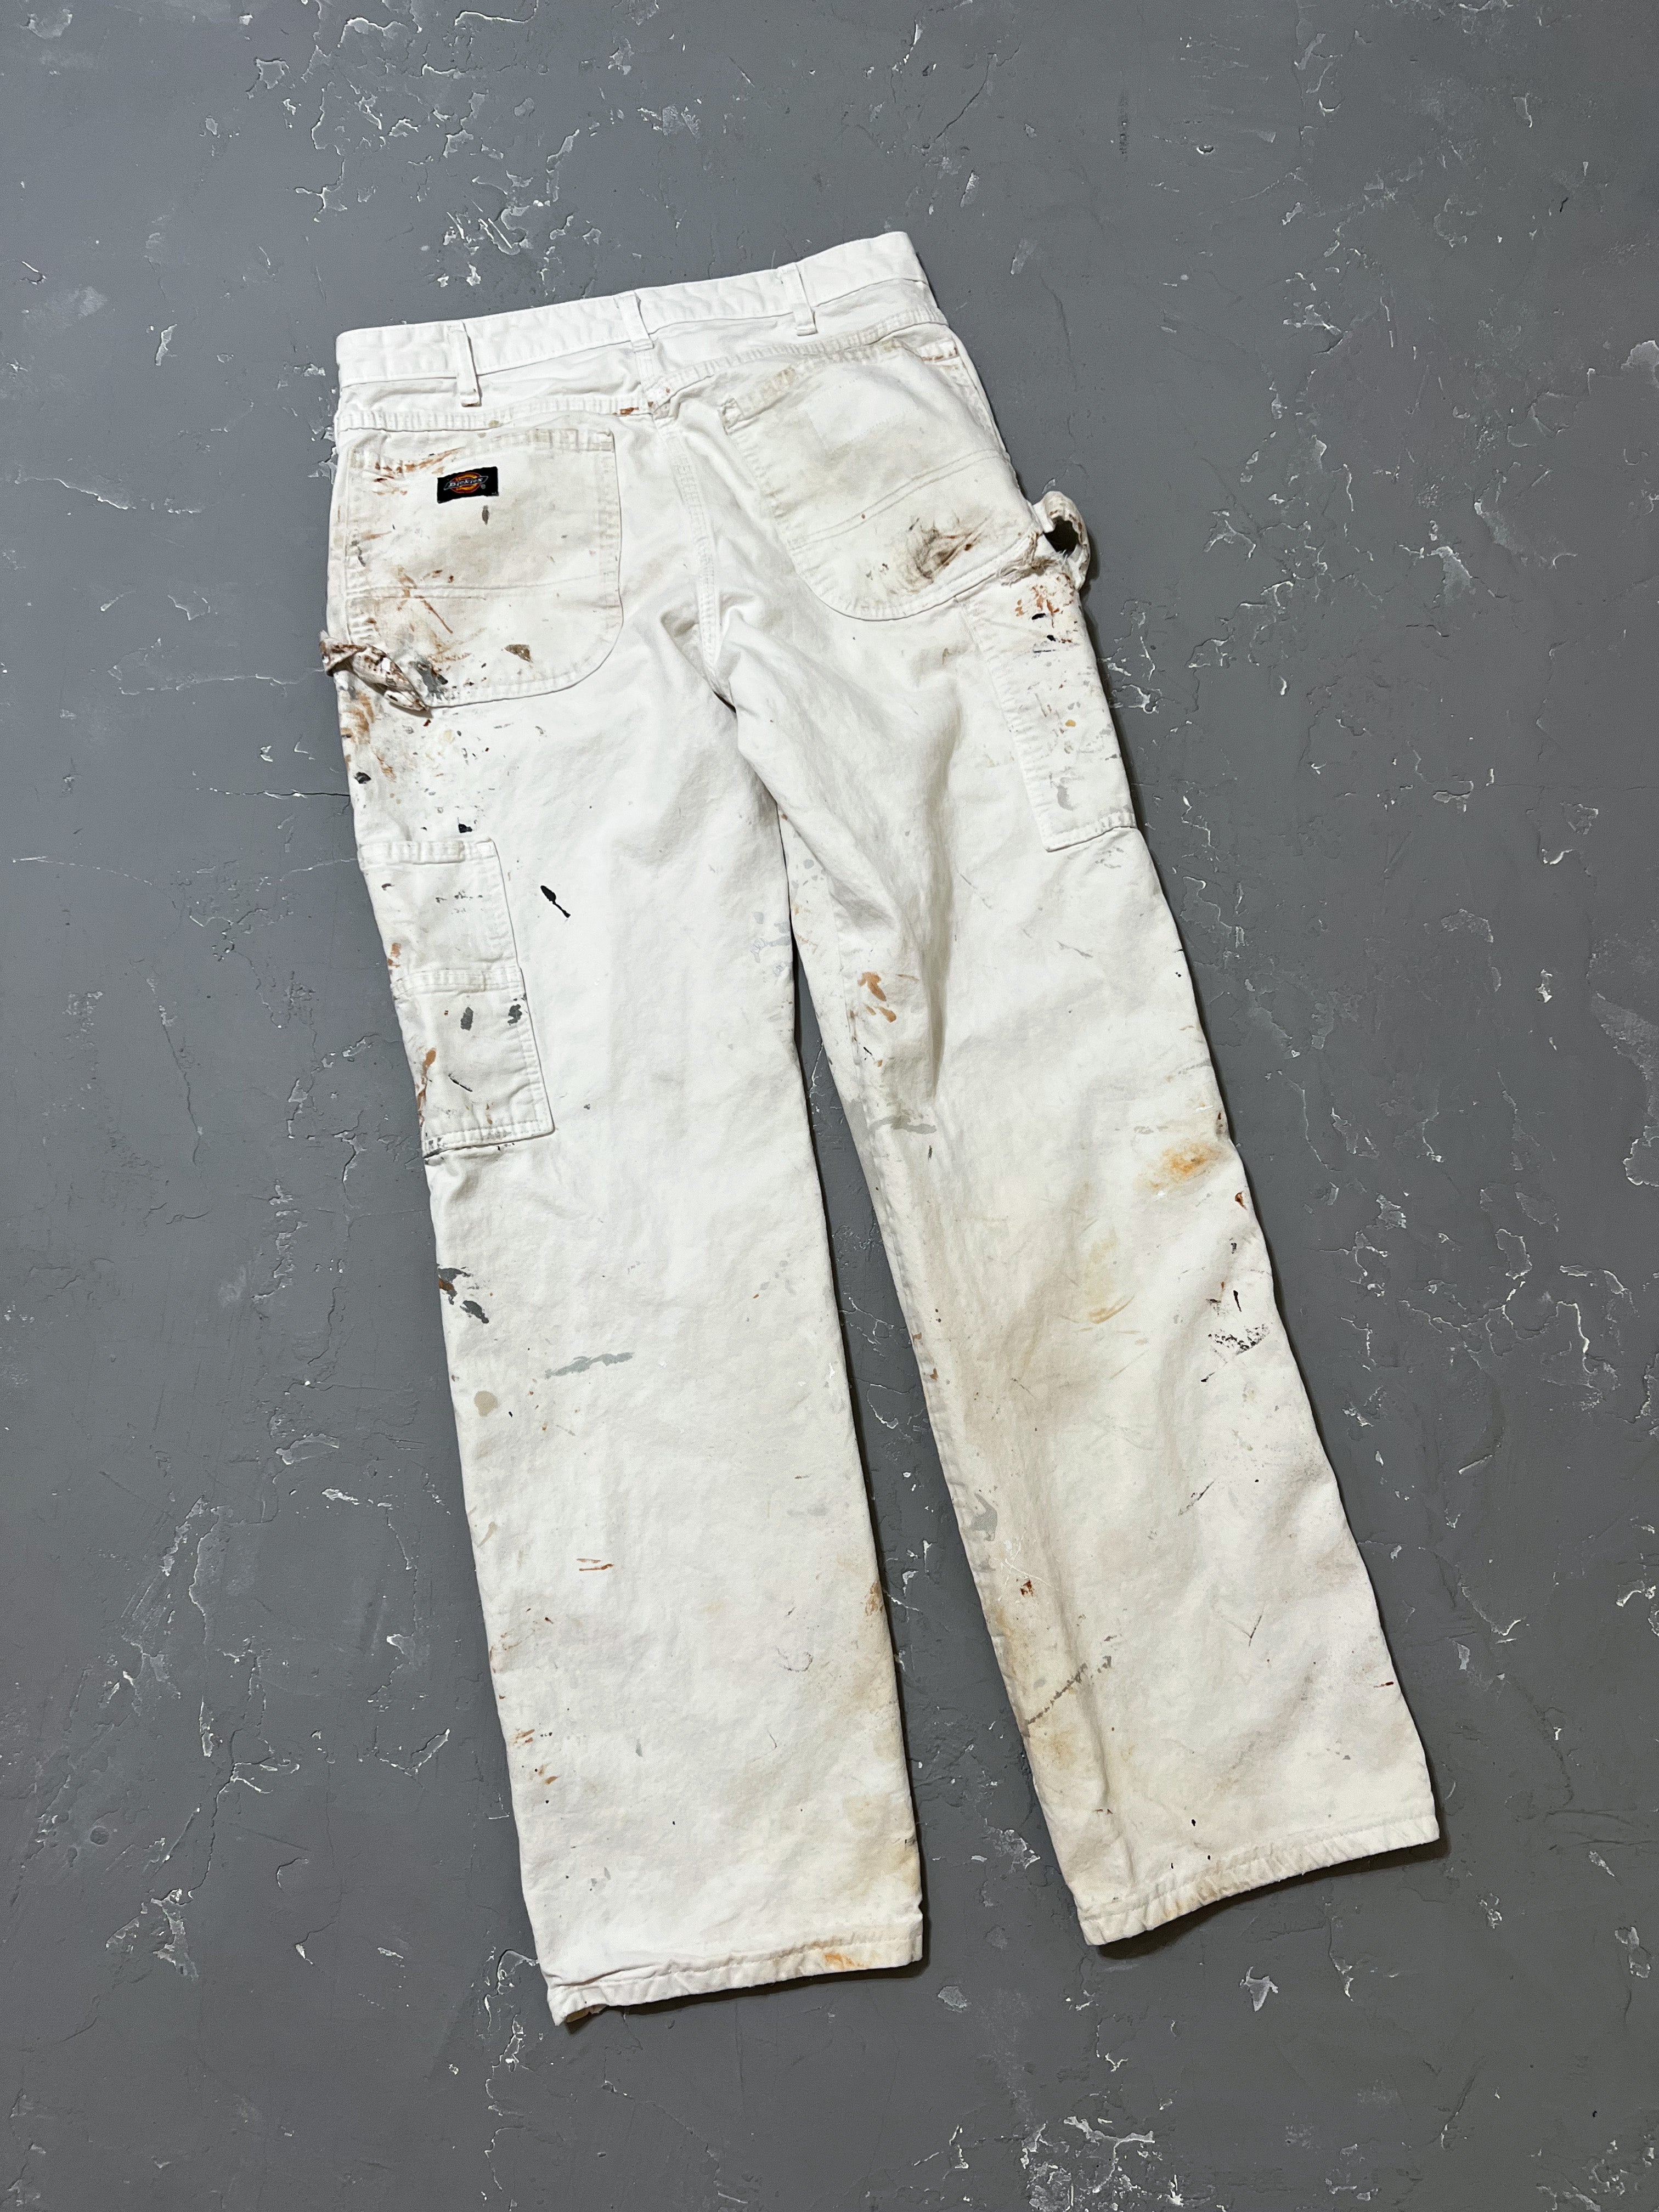 Dickies White Painted Work Pants [31 x 31]